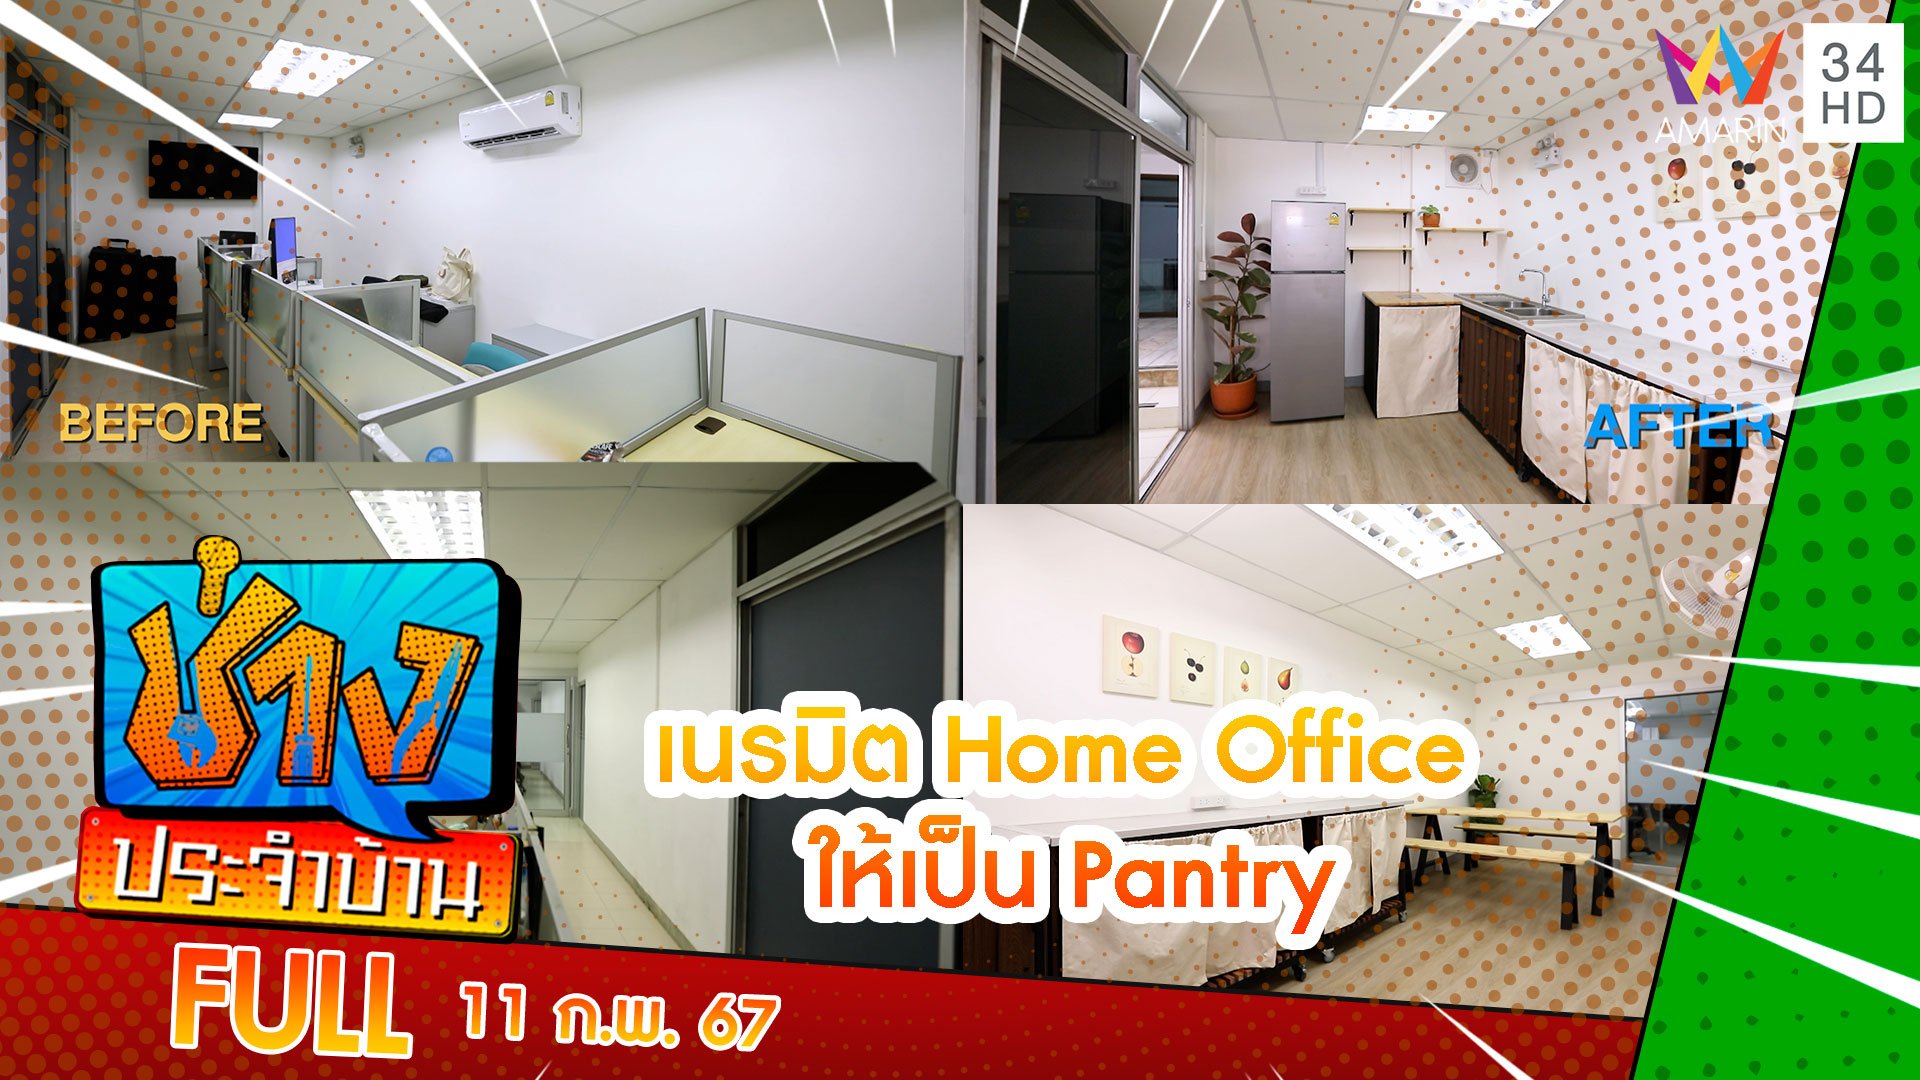 เนรมิต Home Office ให้เป็น Pantry | ช่างประจำบ้าน | 11 ก.พ. 67 | AMARIN TVHD34